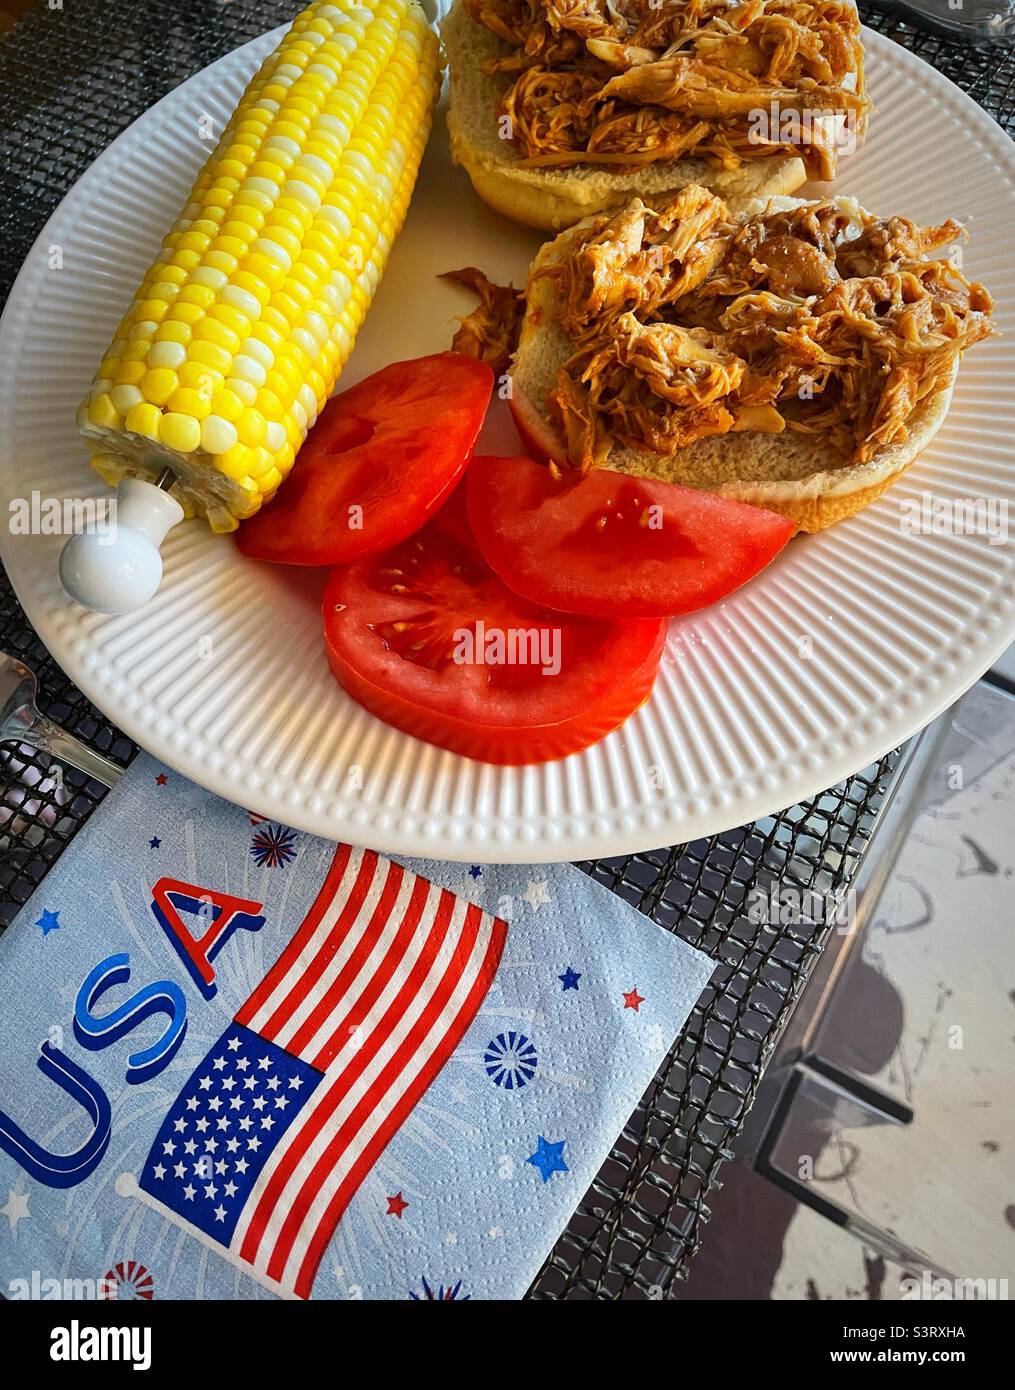 Ein Fest am 4. Juli mit gegrilltem Hähnchensandwich, frischen, reifen Tomaten und Mais auf der Maiskolben, 2022 Vereinigte Staaten von Amerika, USA Stockfoto